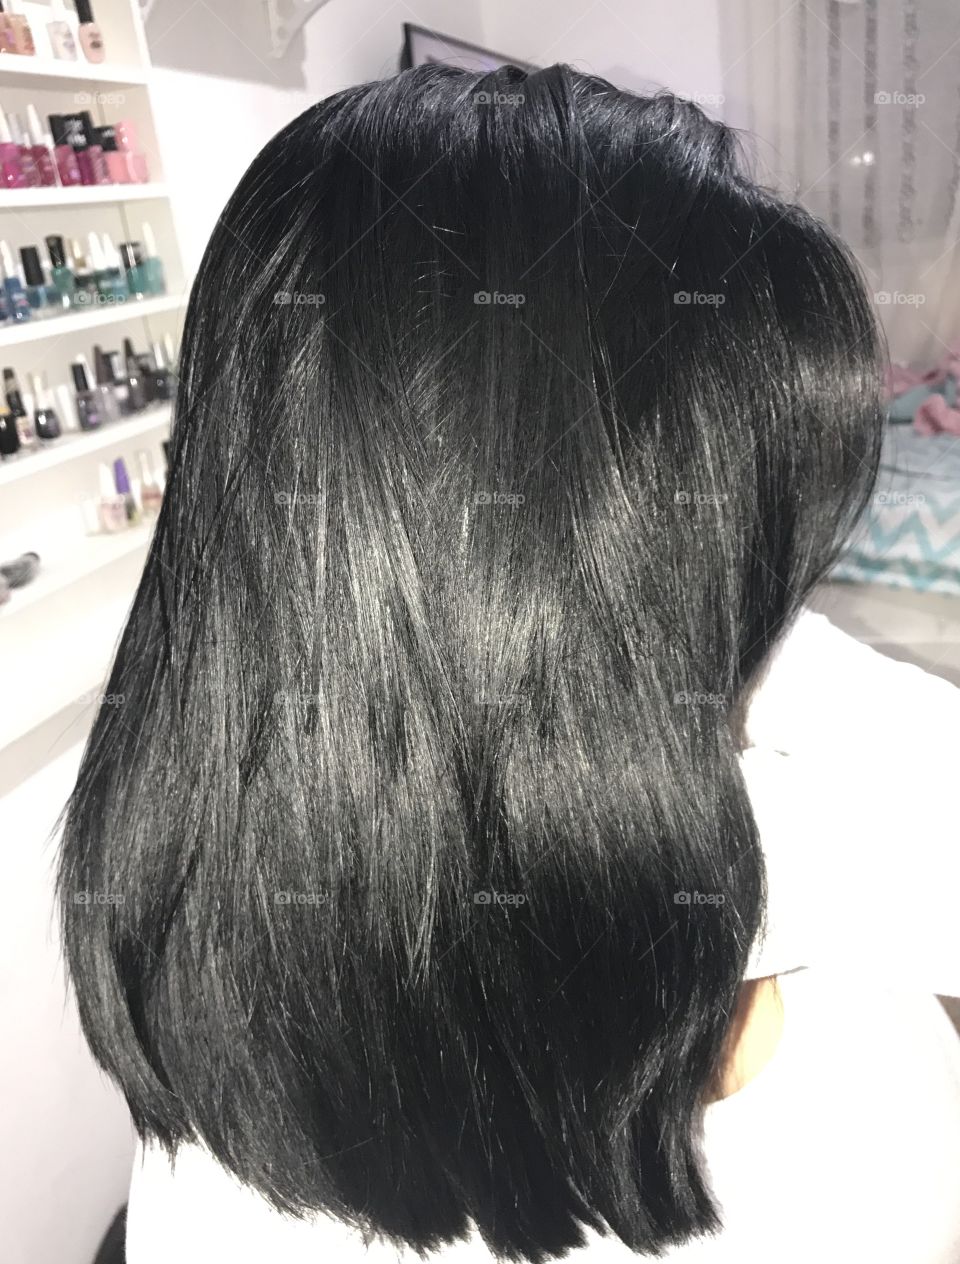 Black hair 